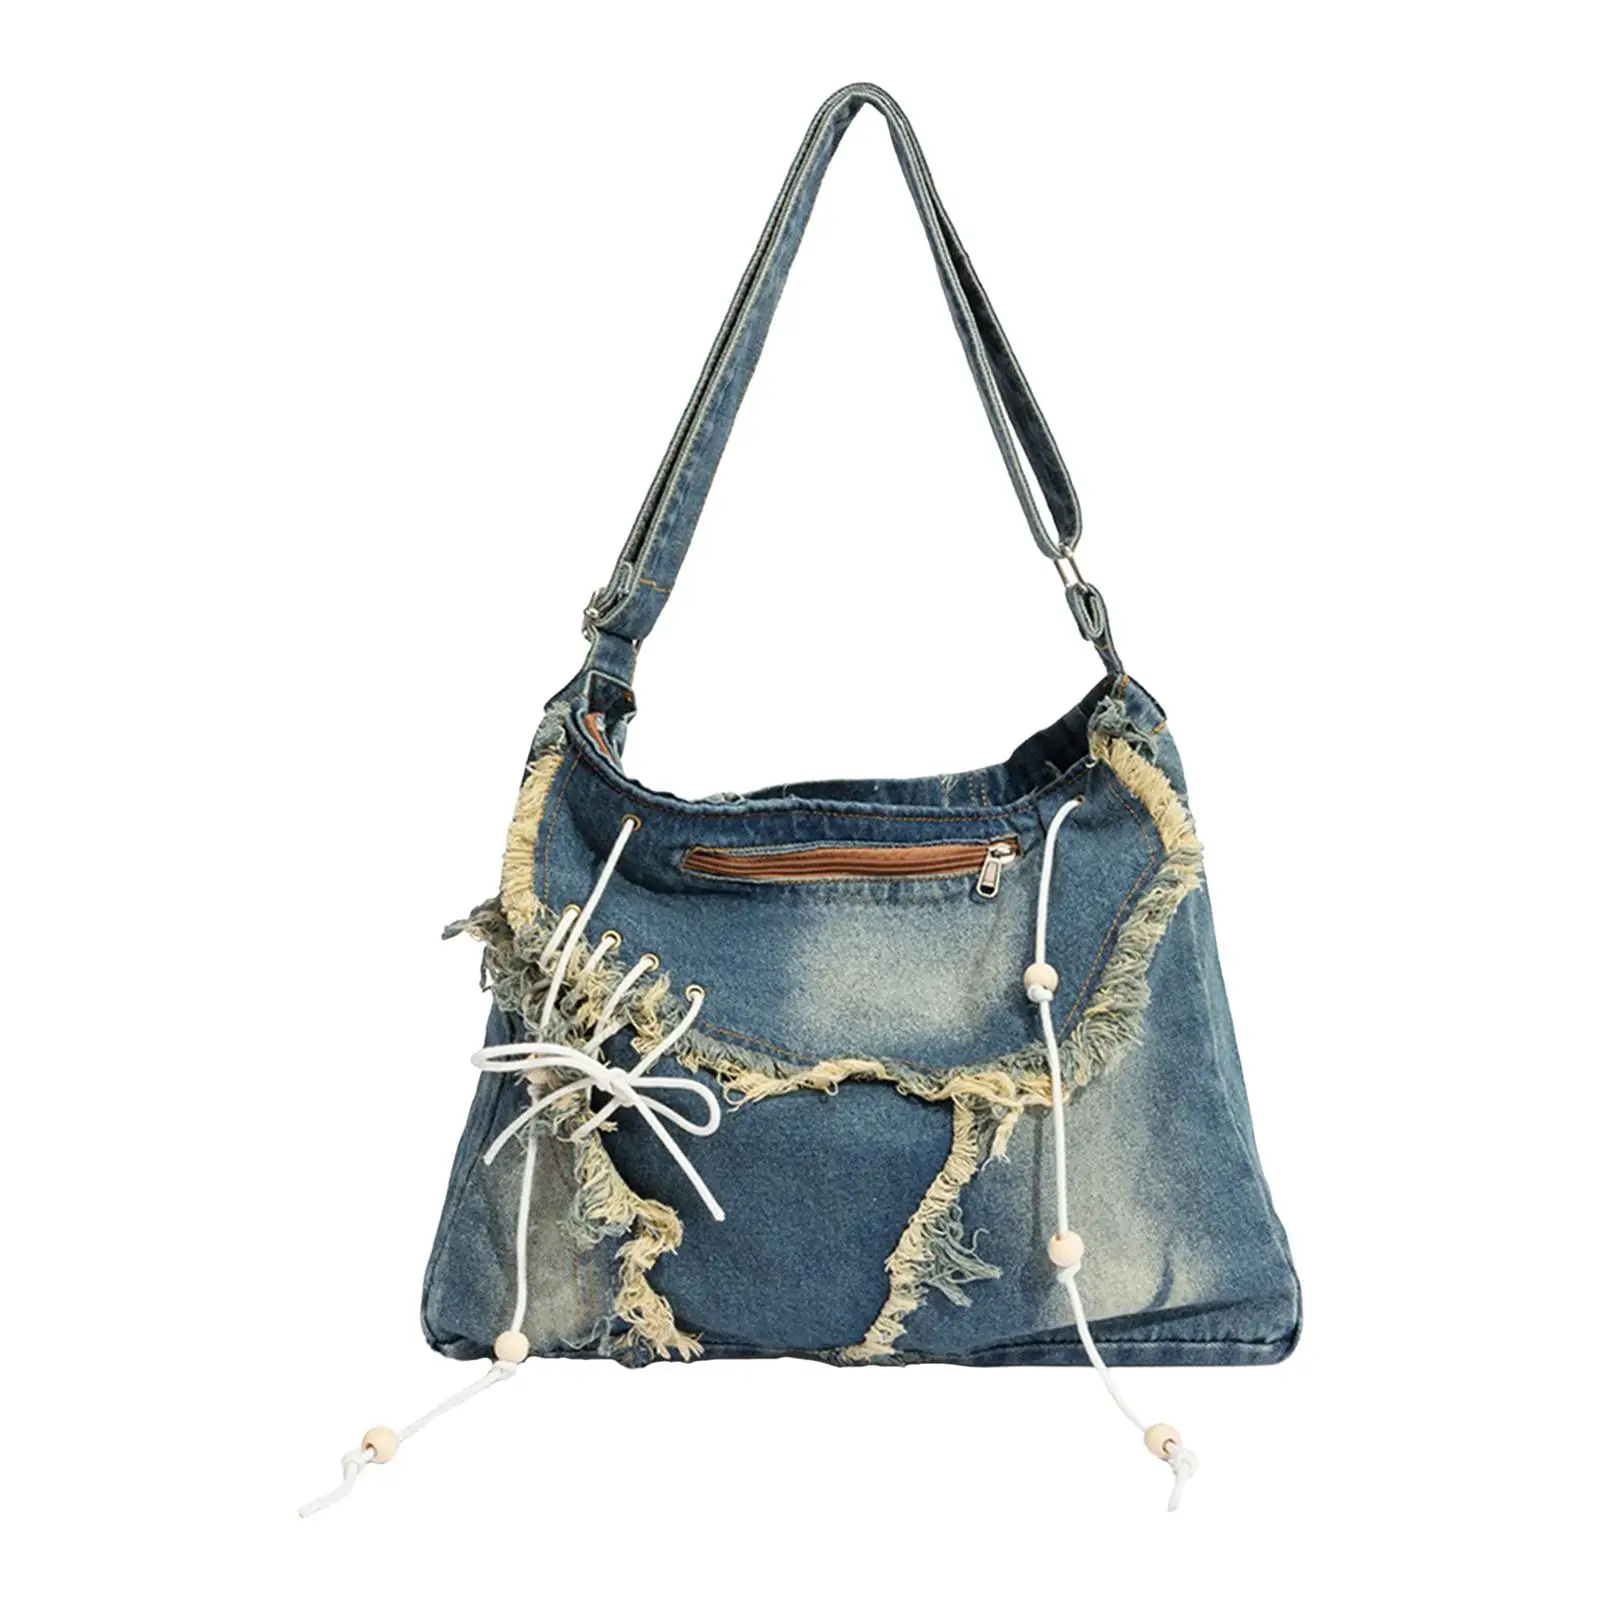 

Женская джинсовая сумка через плечо, Элегантный регулируемый кошелек на ремне, для работы, путешествий, коллеги из джинсовой ткани, на весну